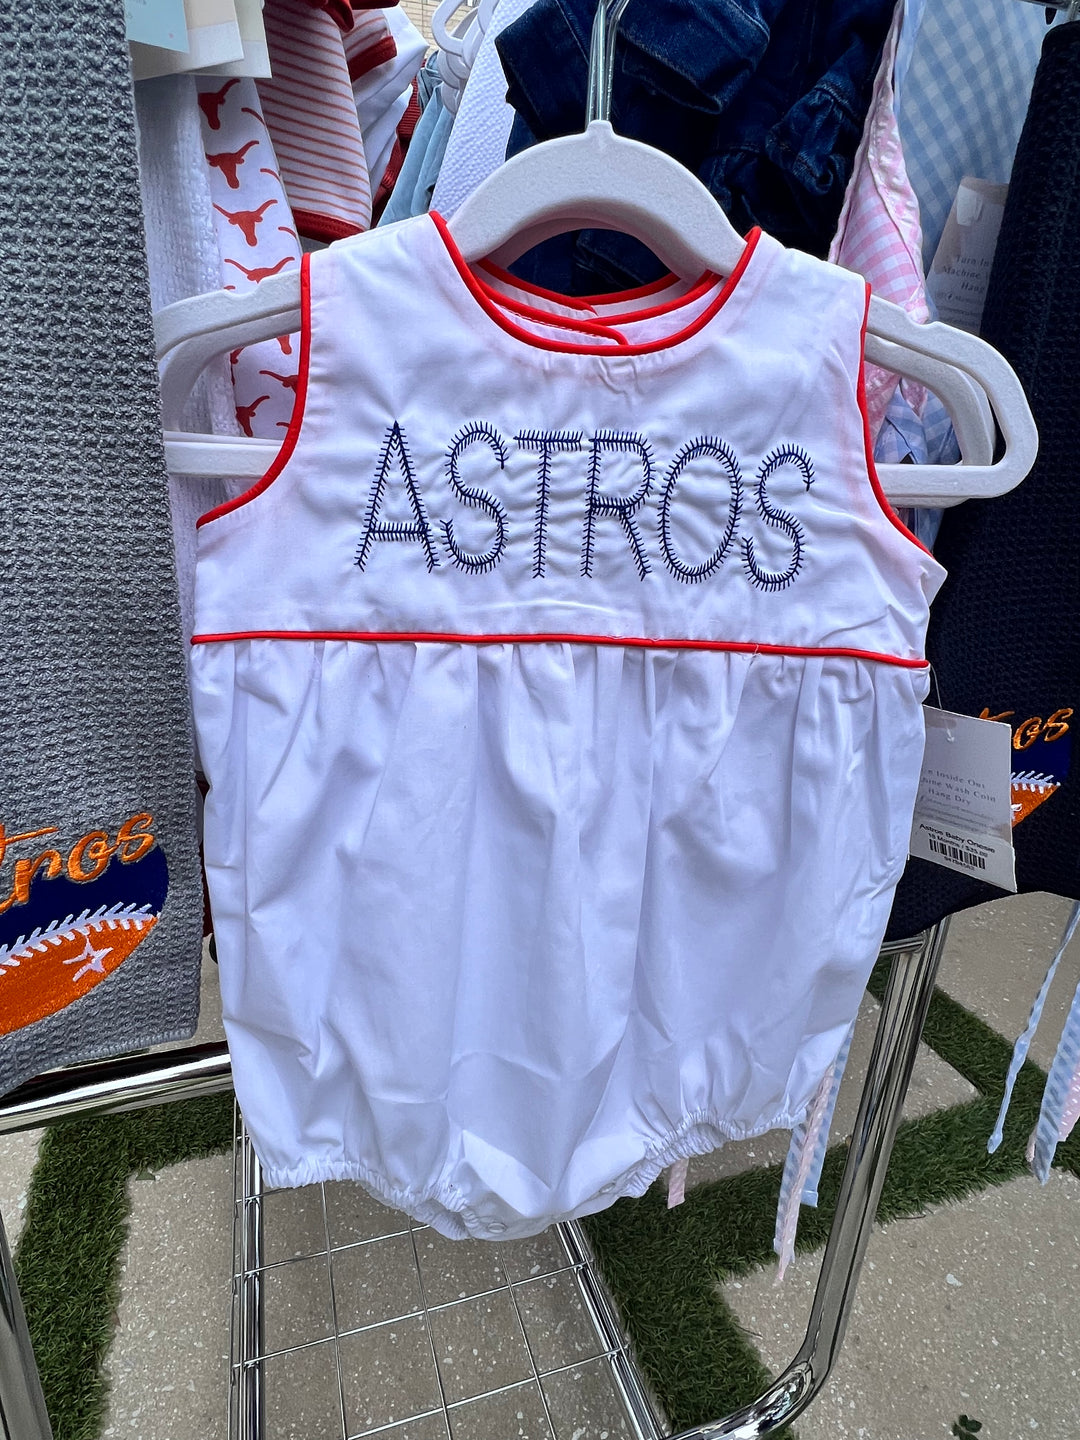 Astros Baby Onesie